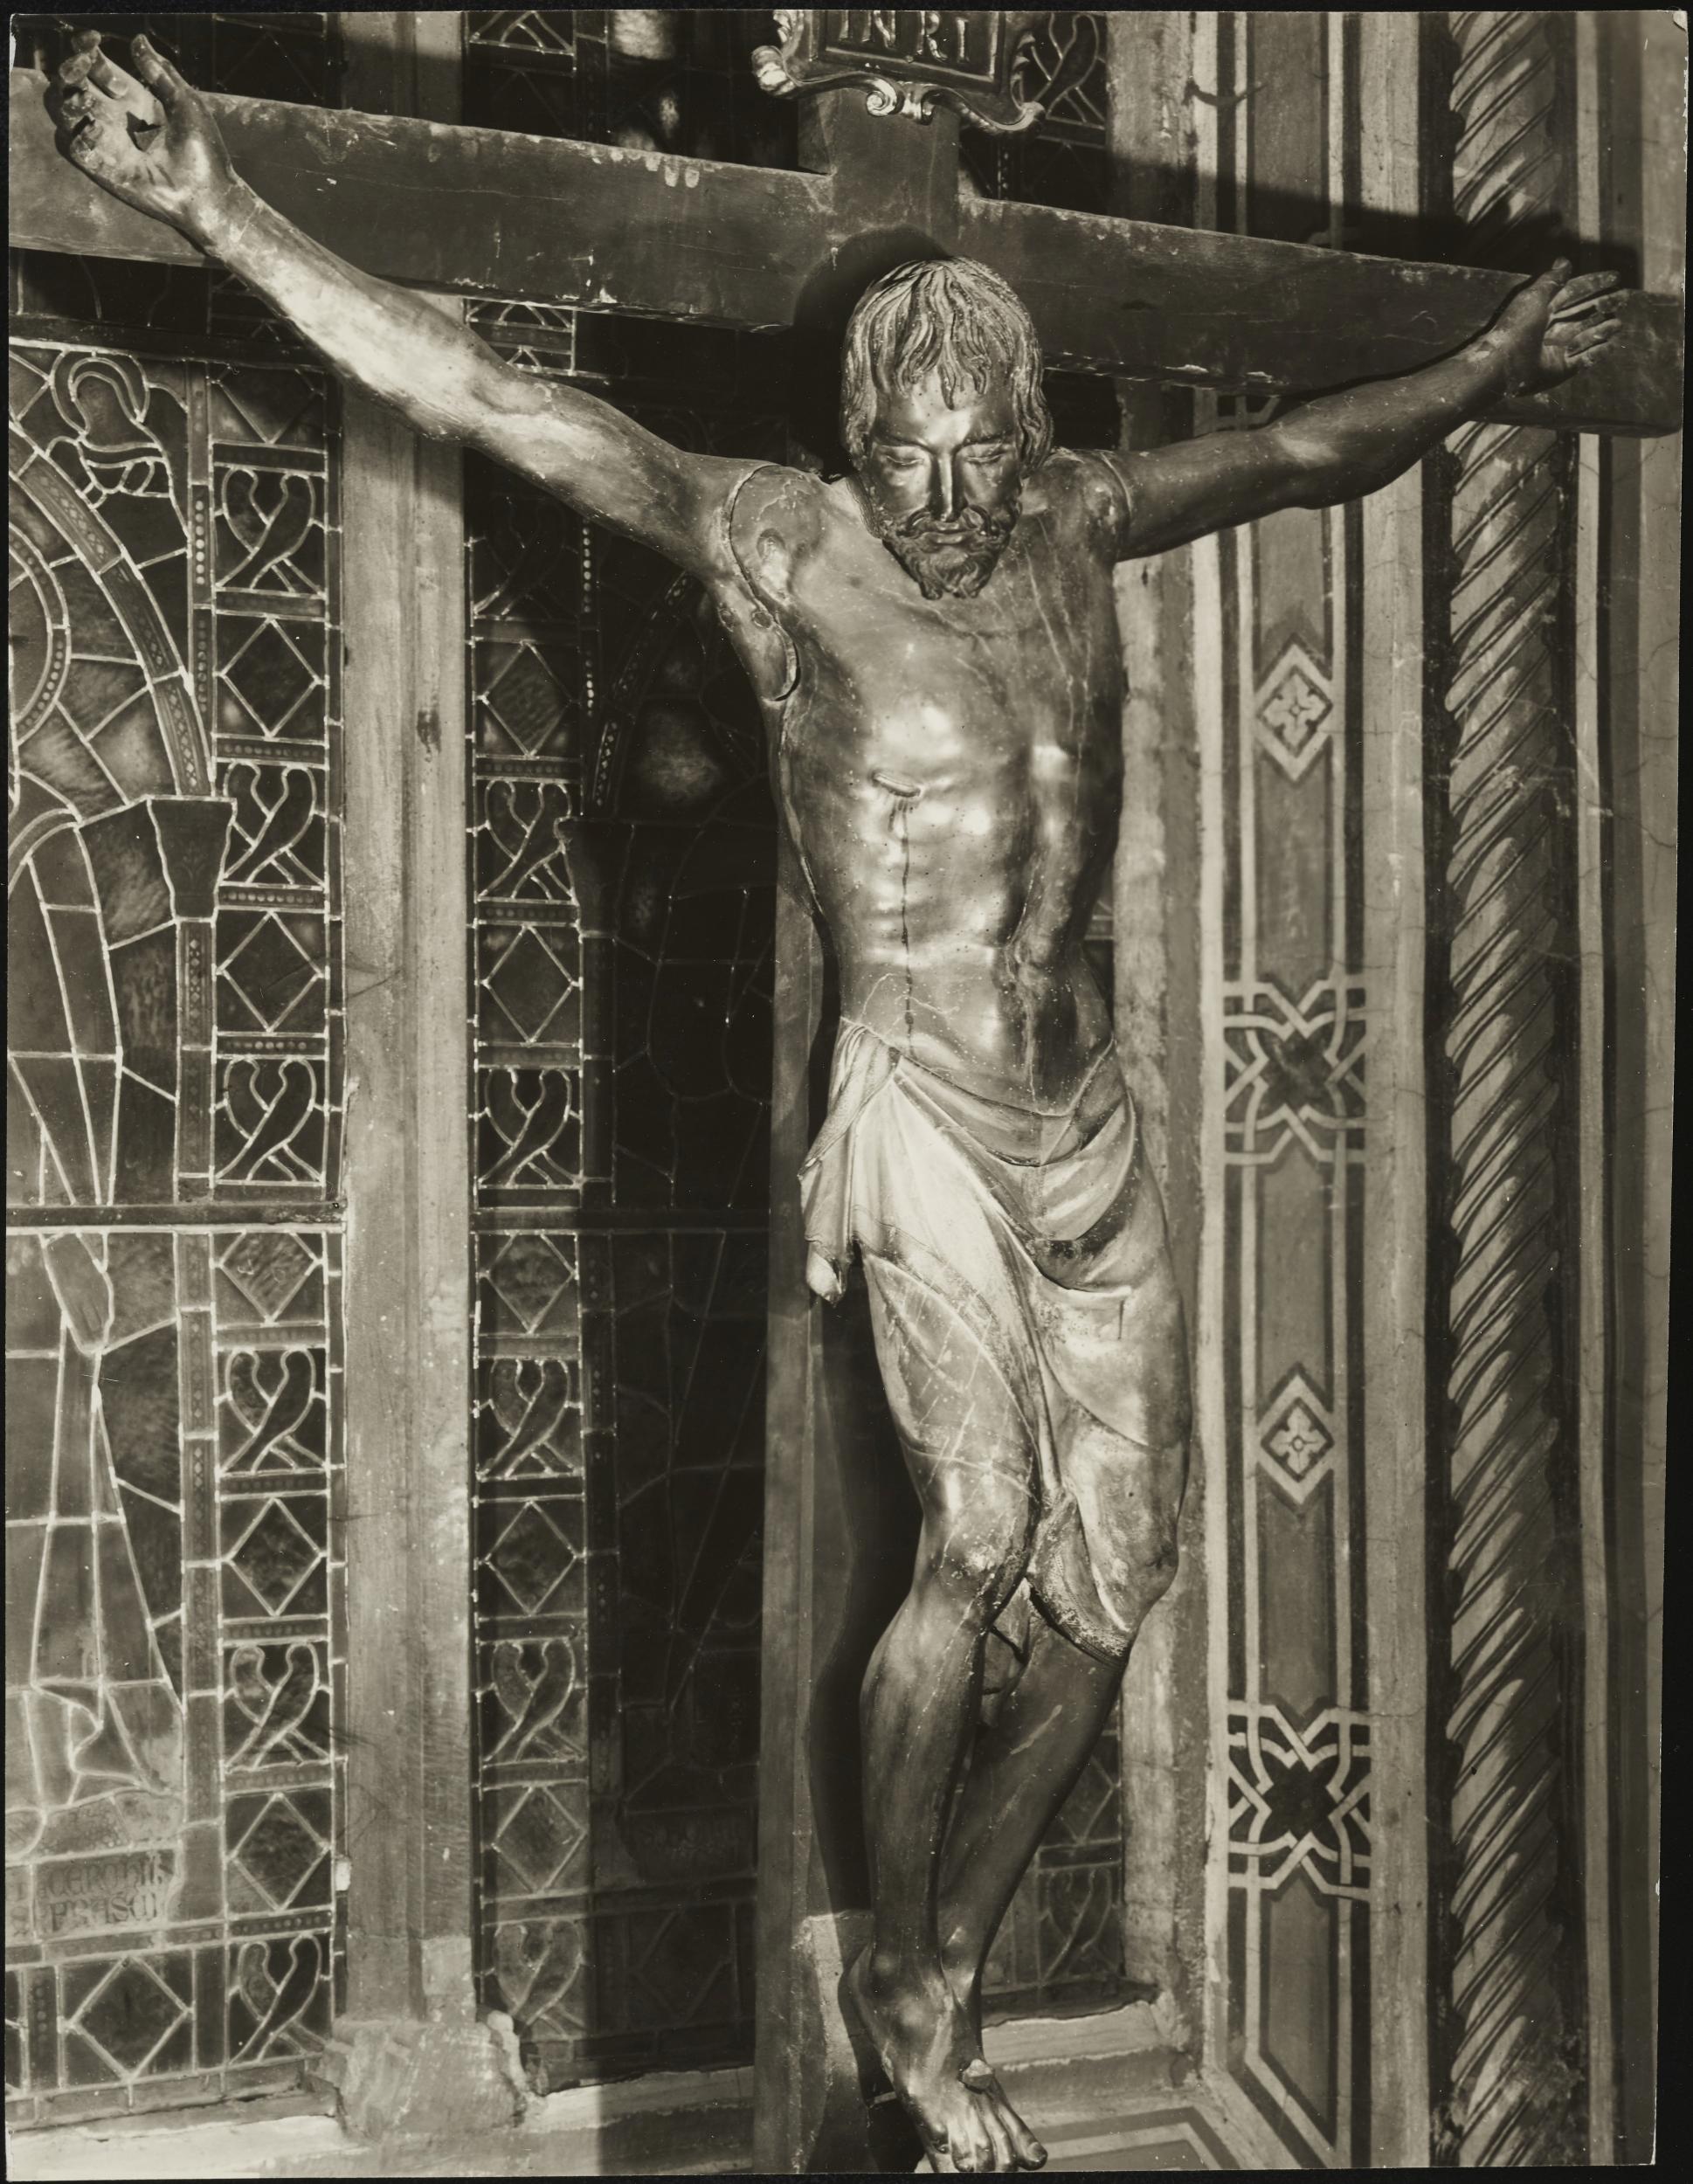 Gino Malenotti, Firenze - Basilica di Santa Croce, Crocifisso, 1931- 1938, gelatina ai sali d'argento, MPI318771